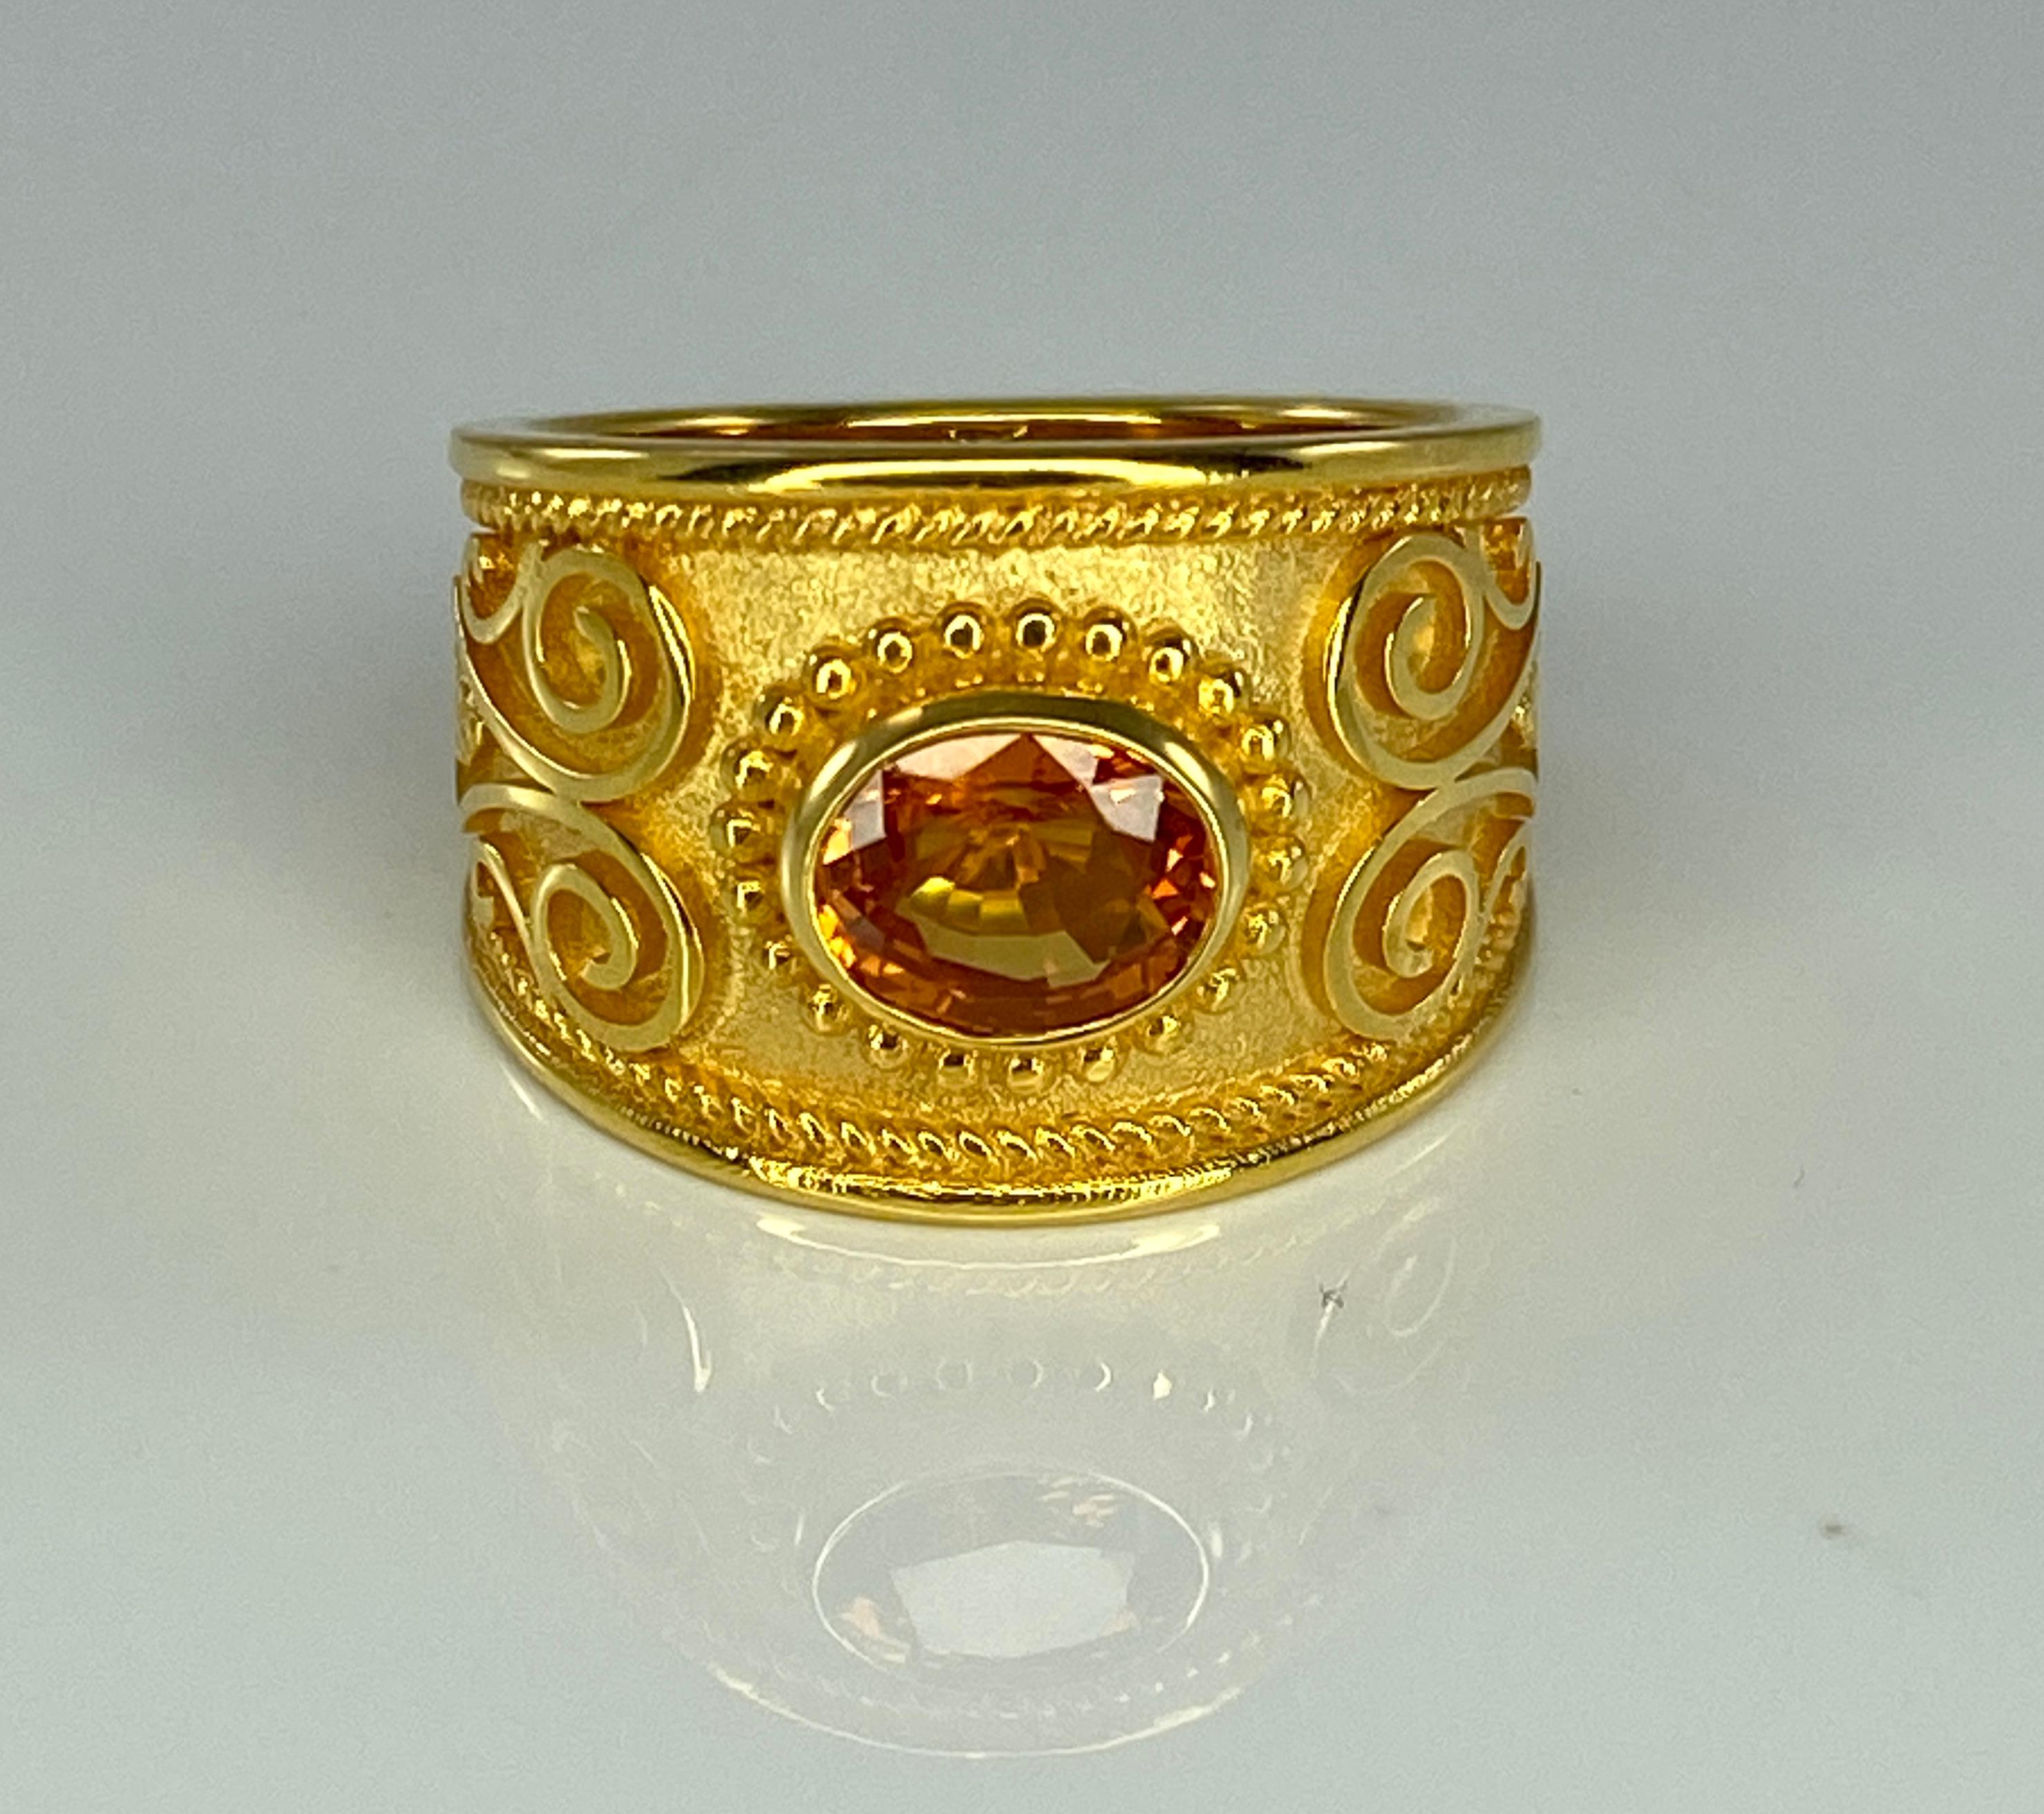 Präsentiert S.Georgios Designer 18 Karat massivem Gelbgold Ring alle handgefertigt mit dem byzantinischen Stil Verarbeitung und eine einzigartige Samt Hintergrund mit natürlichen ovalen Schnitt 1,52 Karat Orange Saphir verziert. Alle granulierten